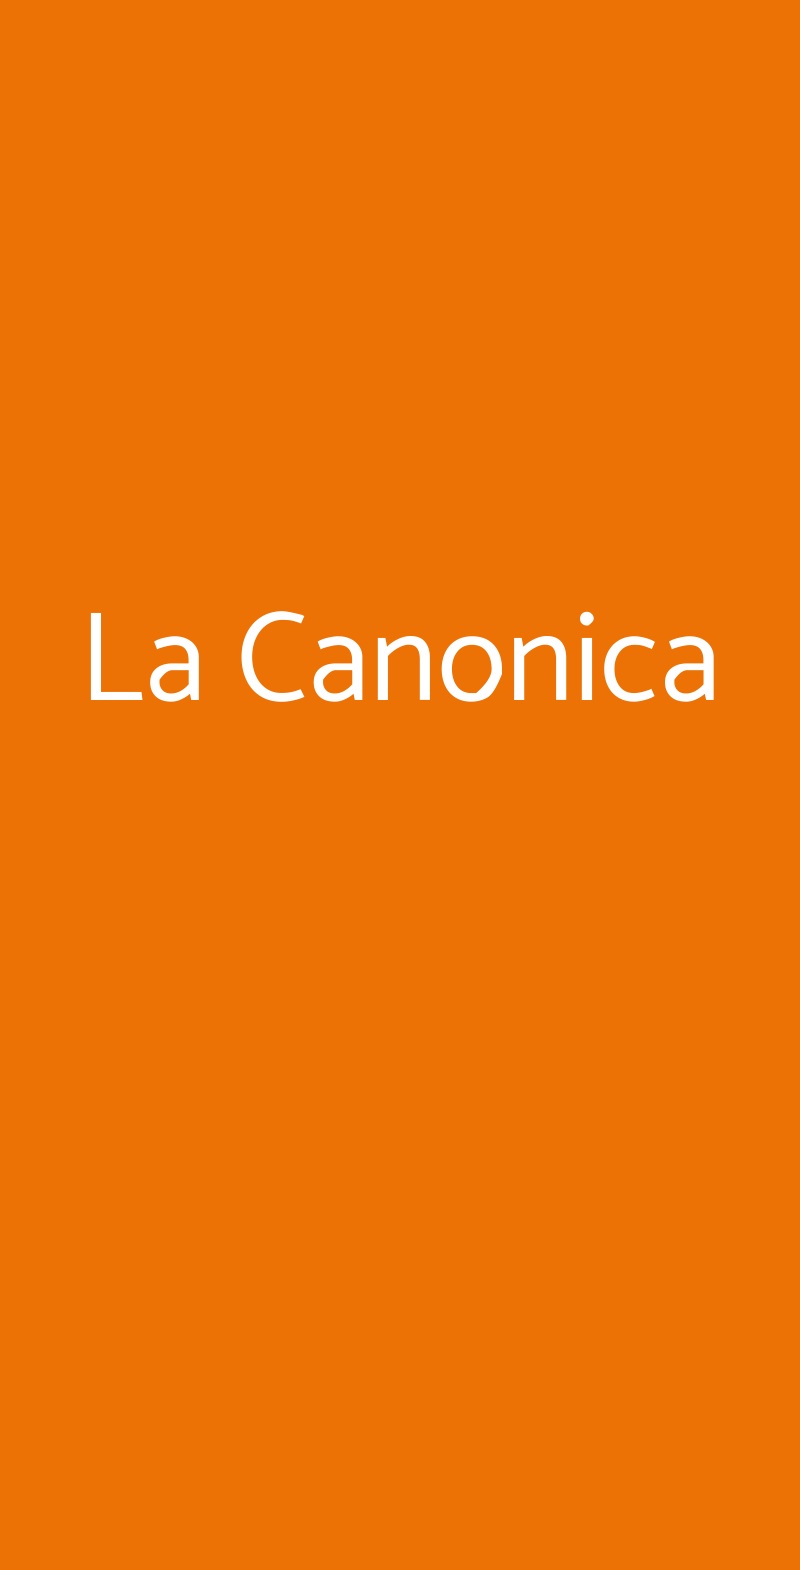 La Canonica Certaldo menù 1 pagina